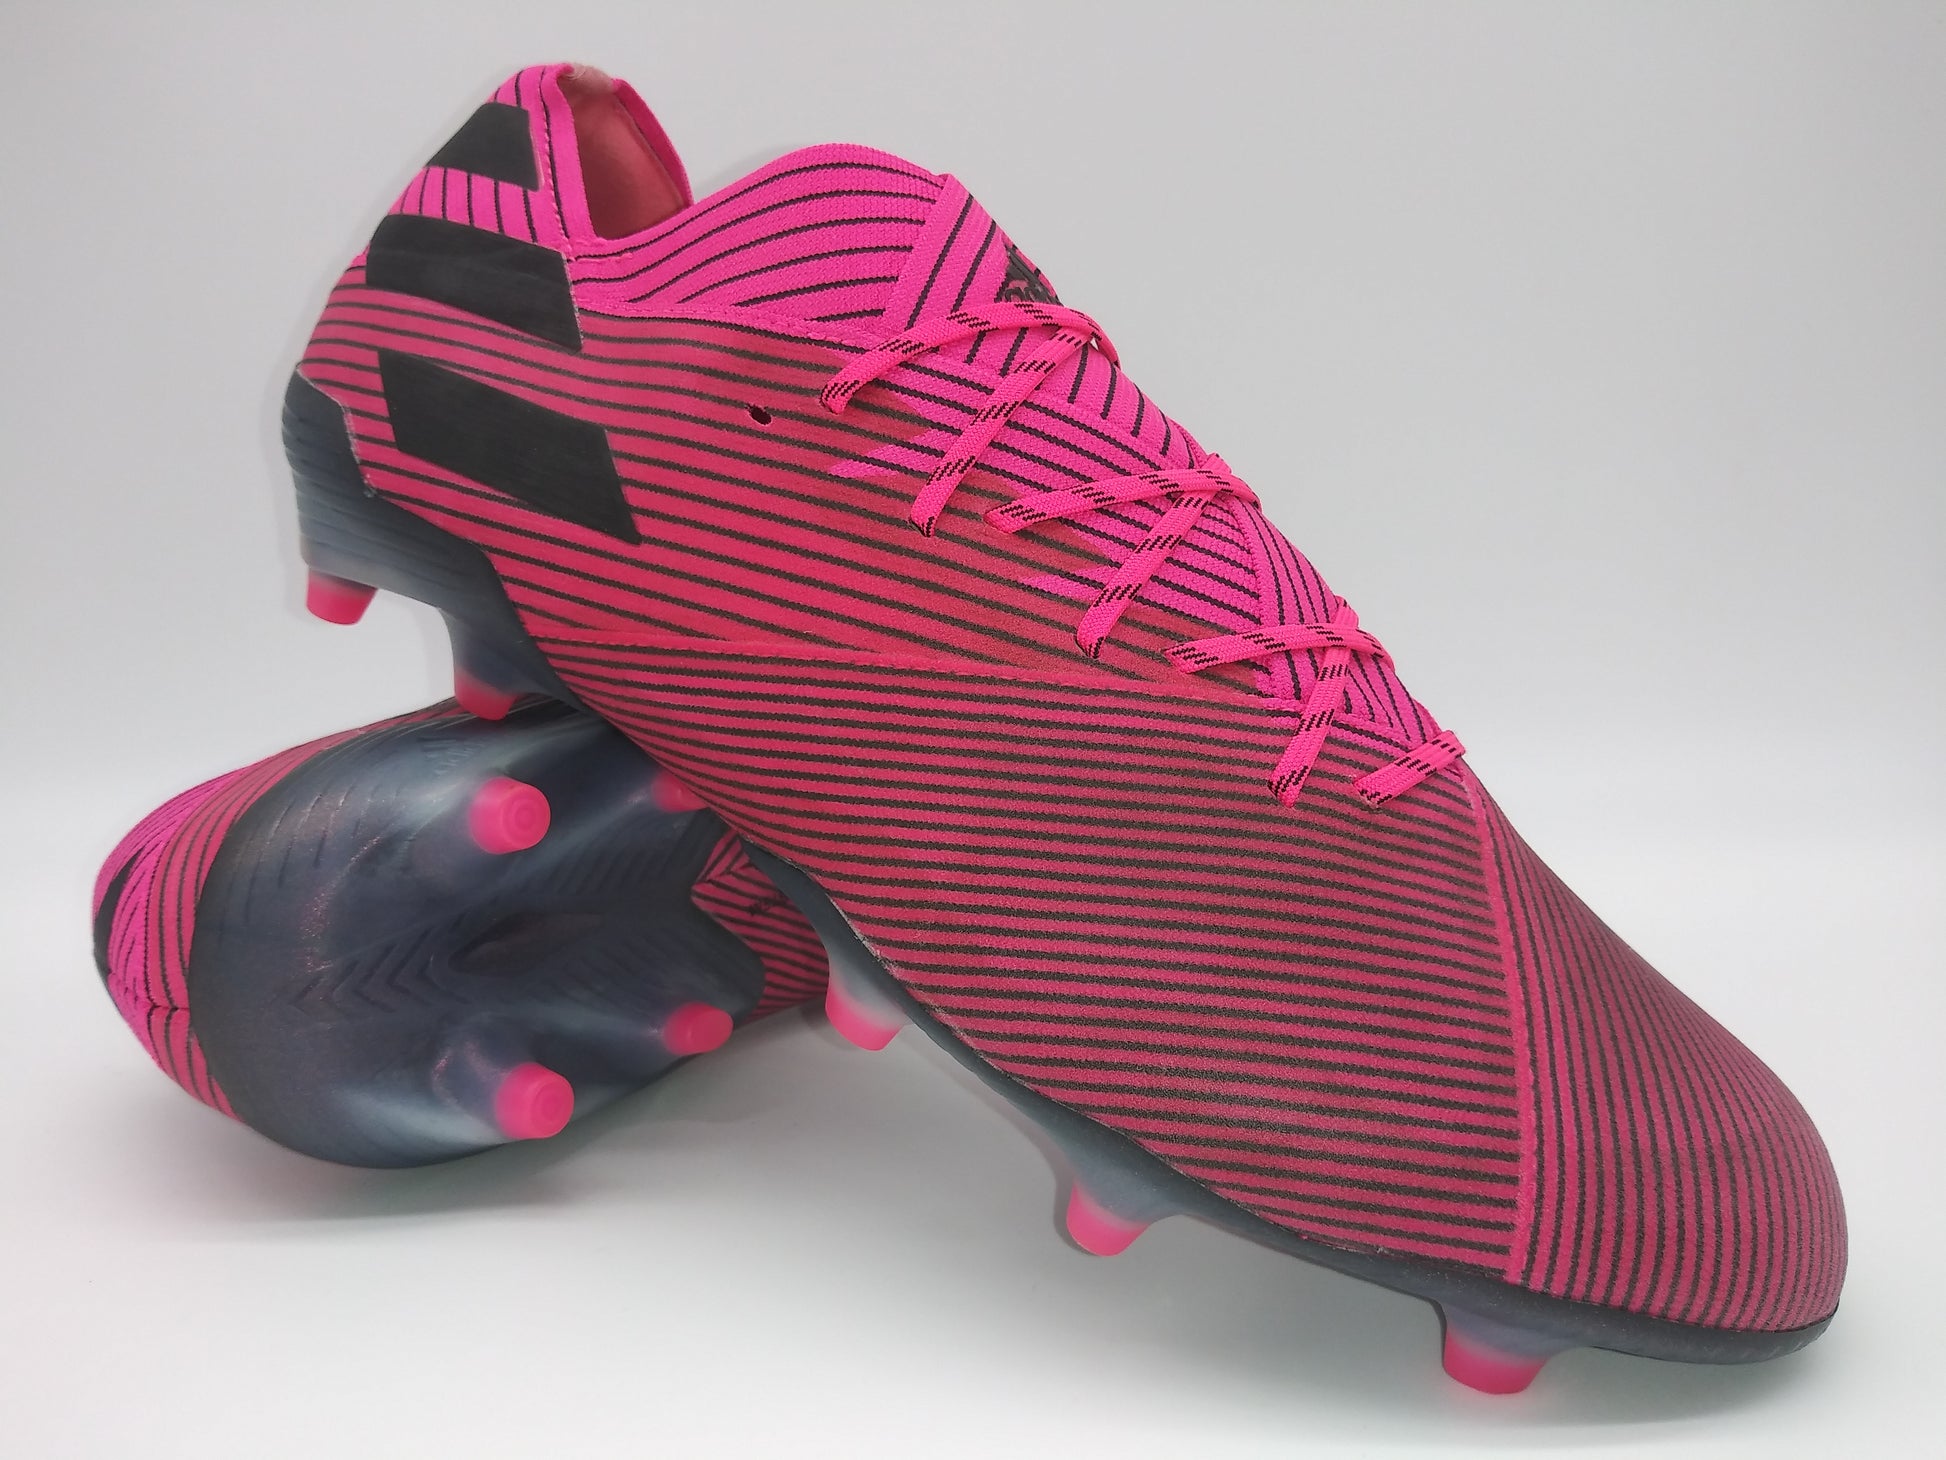 Ambientalista libro de bolsillo tugurio Adidas Nemeziz 19.1 FG Pink Black – Villegas Footwear